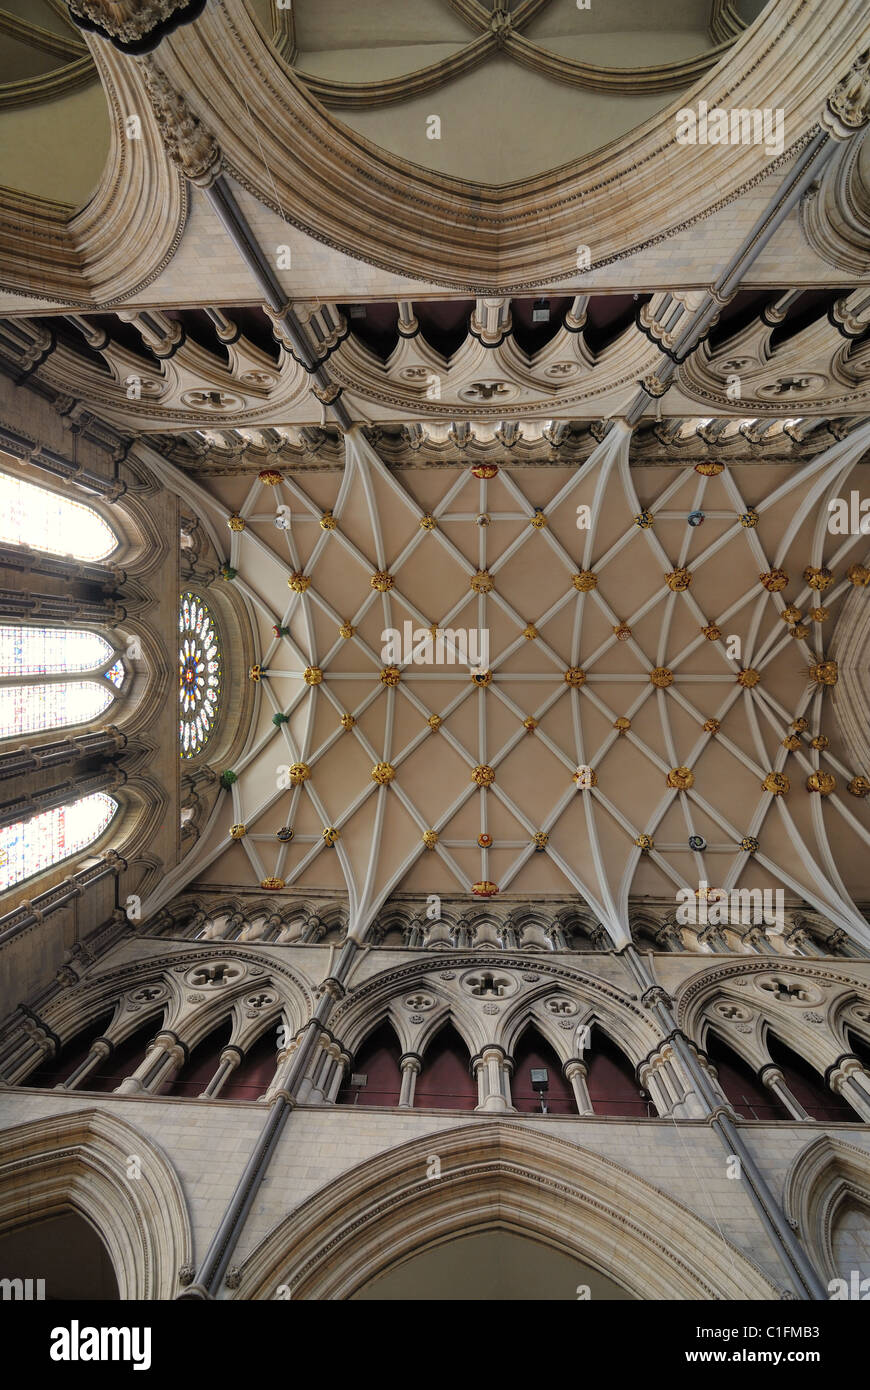 Intérieur de la cathédrale de York, un monument cathédrale de York, en Angleterre. Banque D'Images